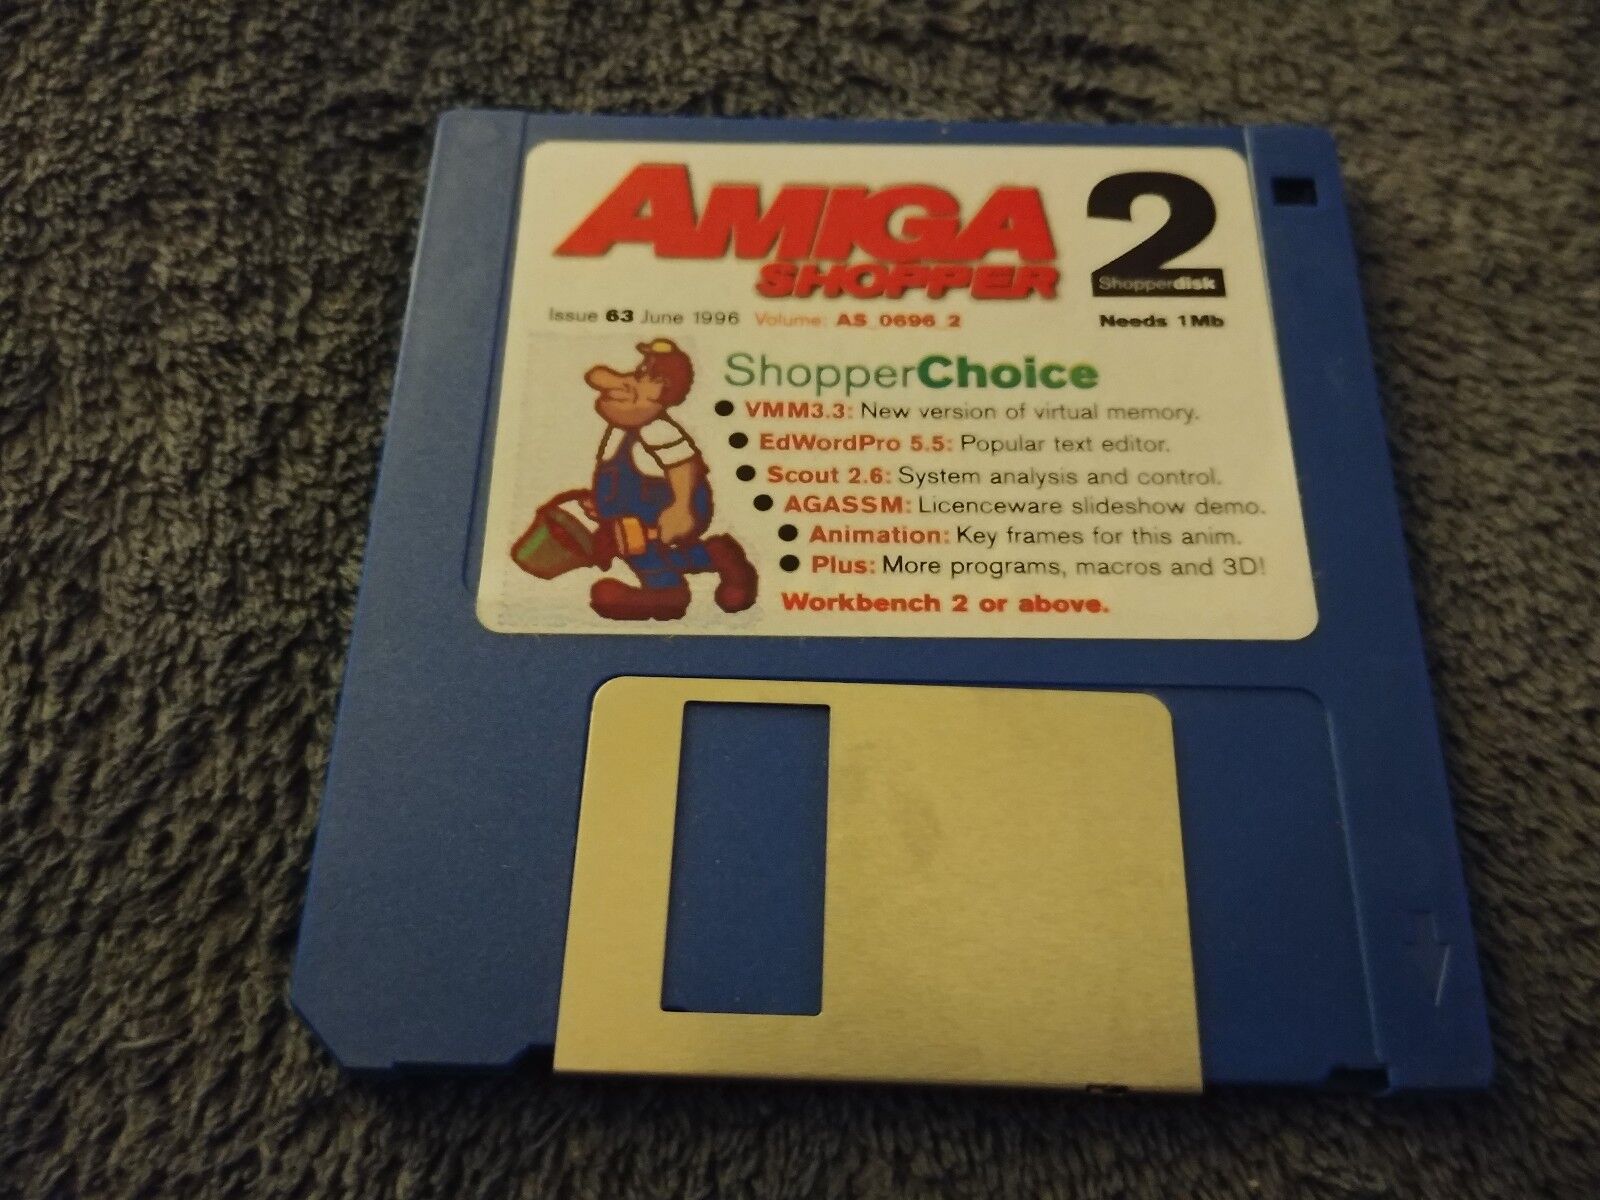 Shopper Choice Amiga Shopper Magazine Cover Disk 63